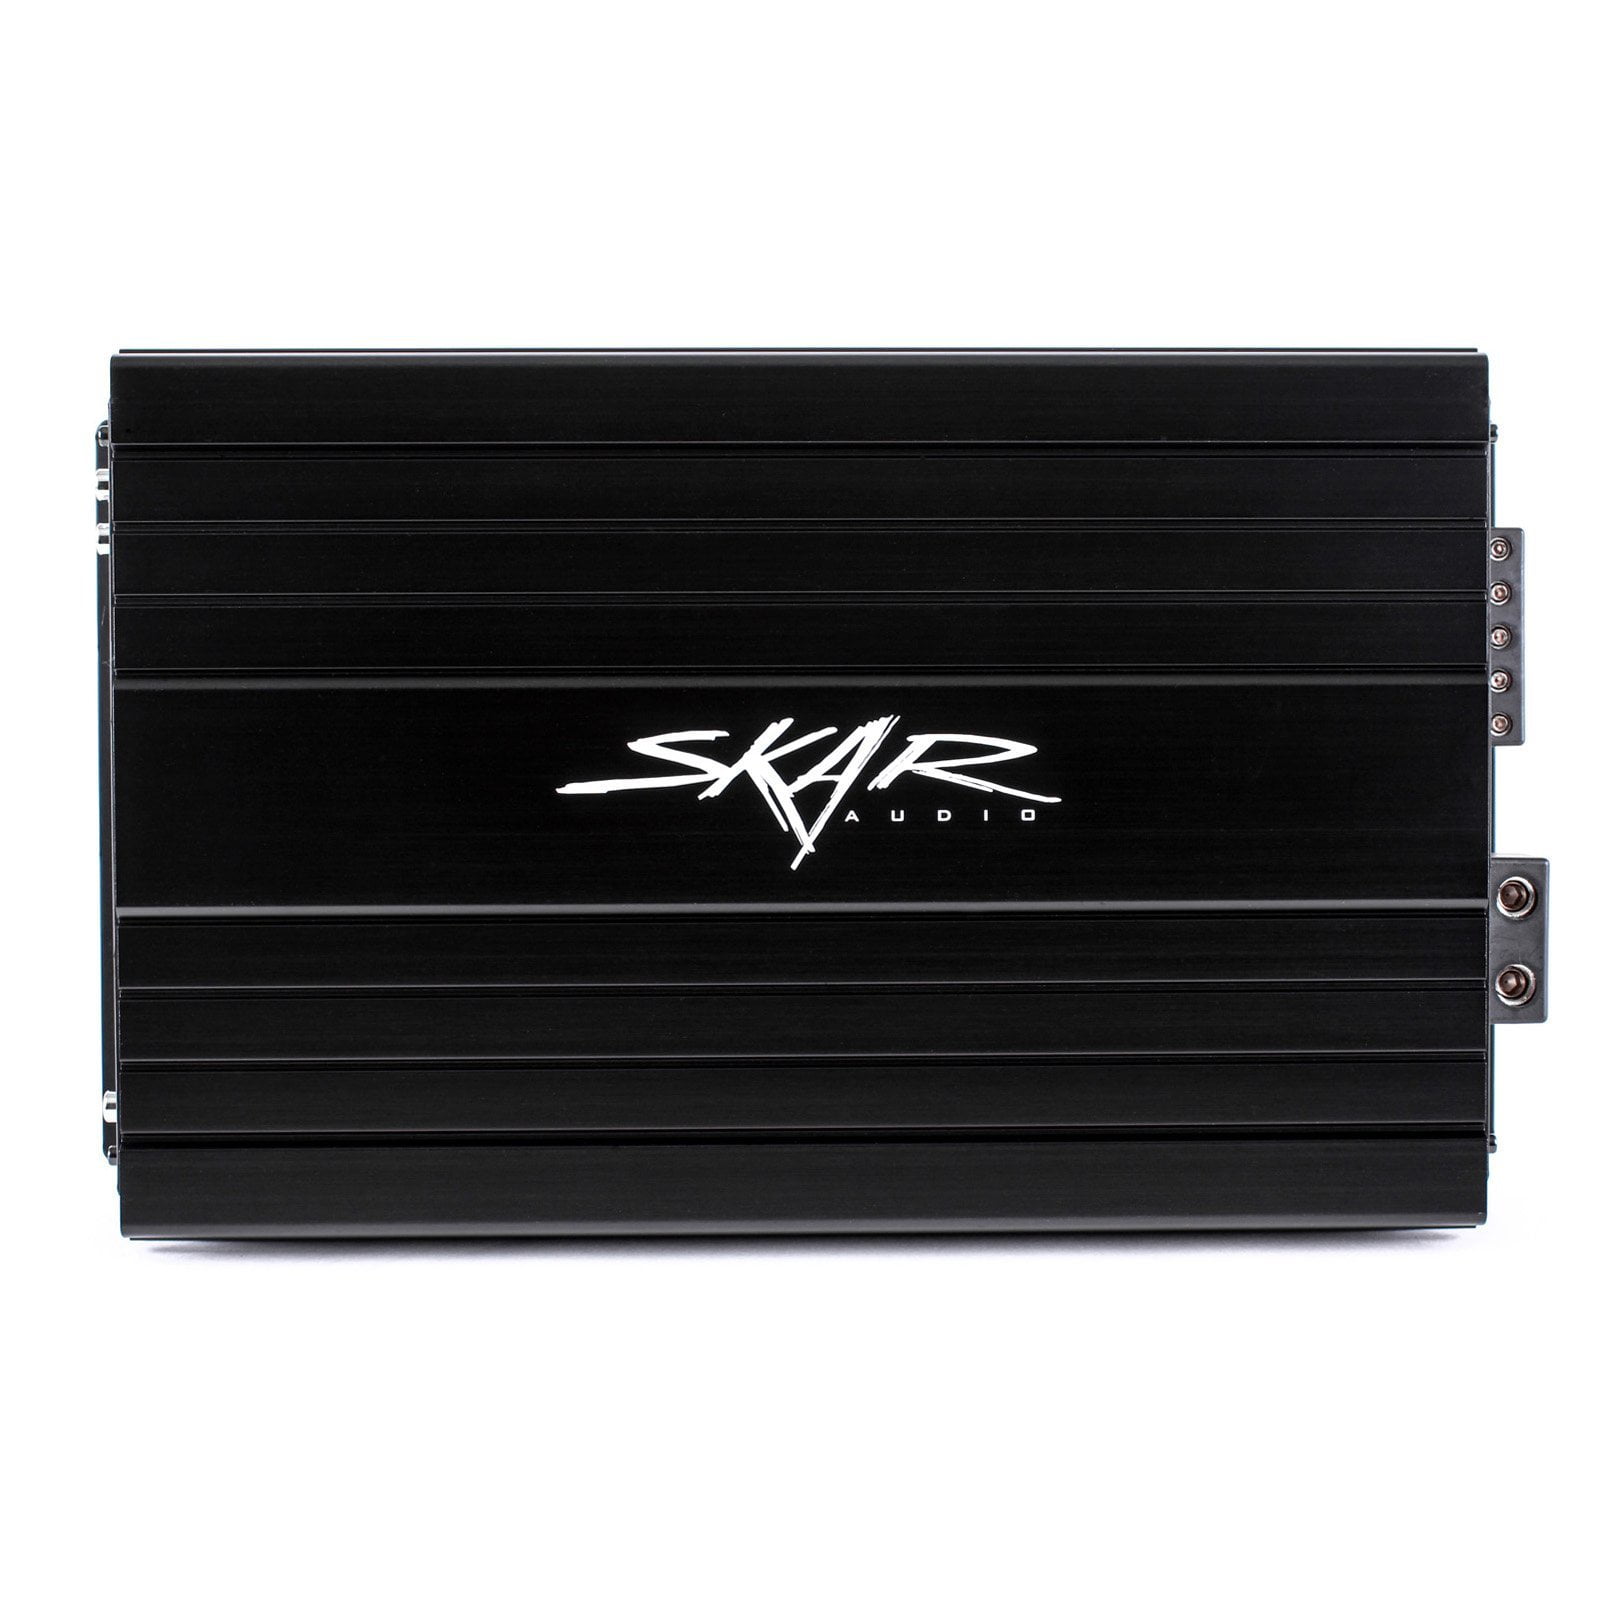 Skar Audio SKv2-1500.1D 1,500 Watt Class D Monoblock Car Amplifier - Front View